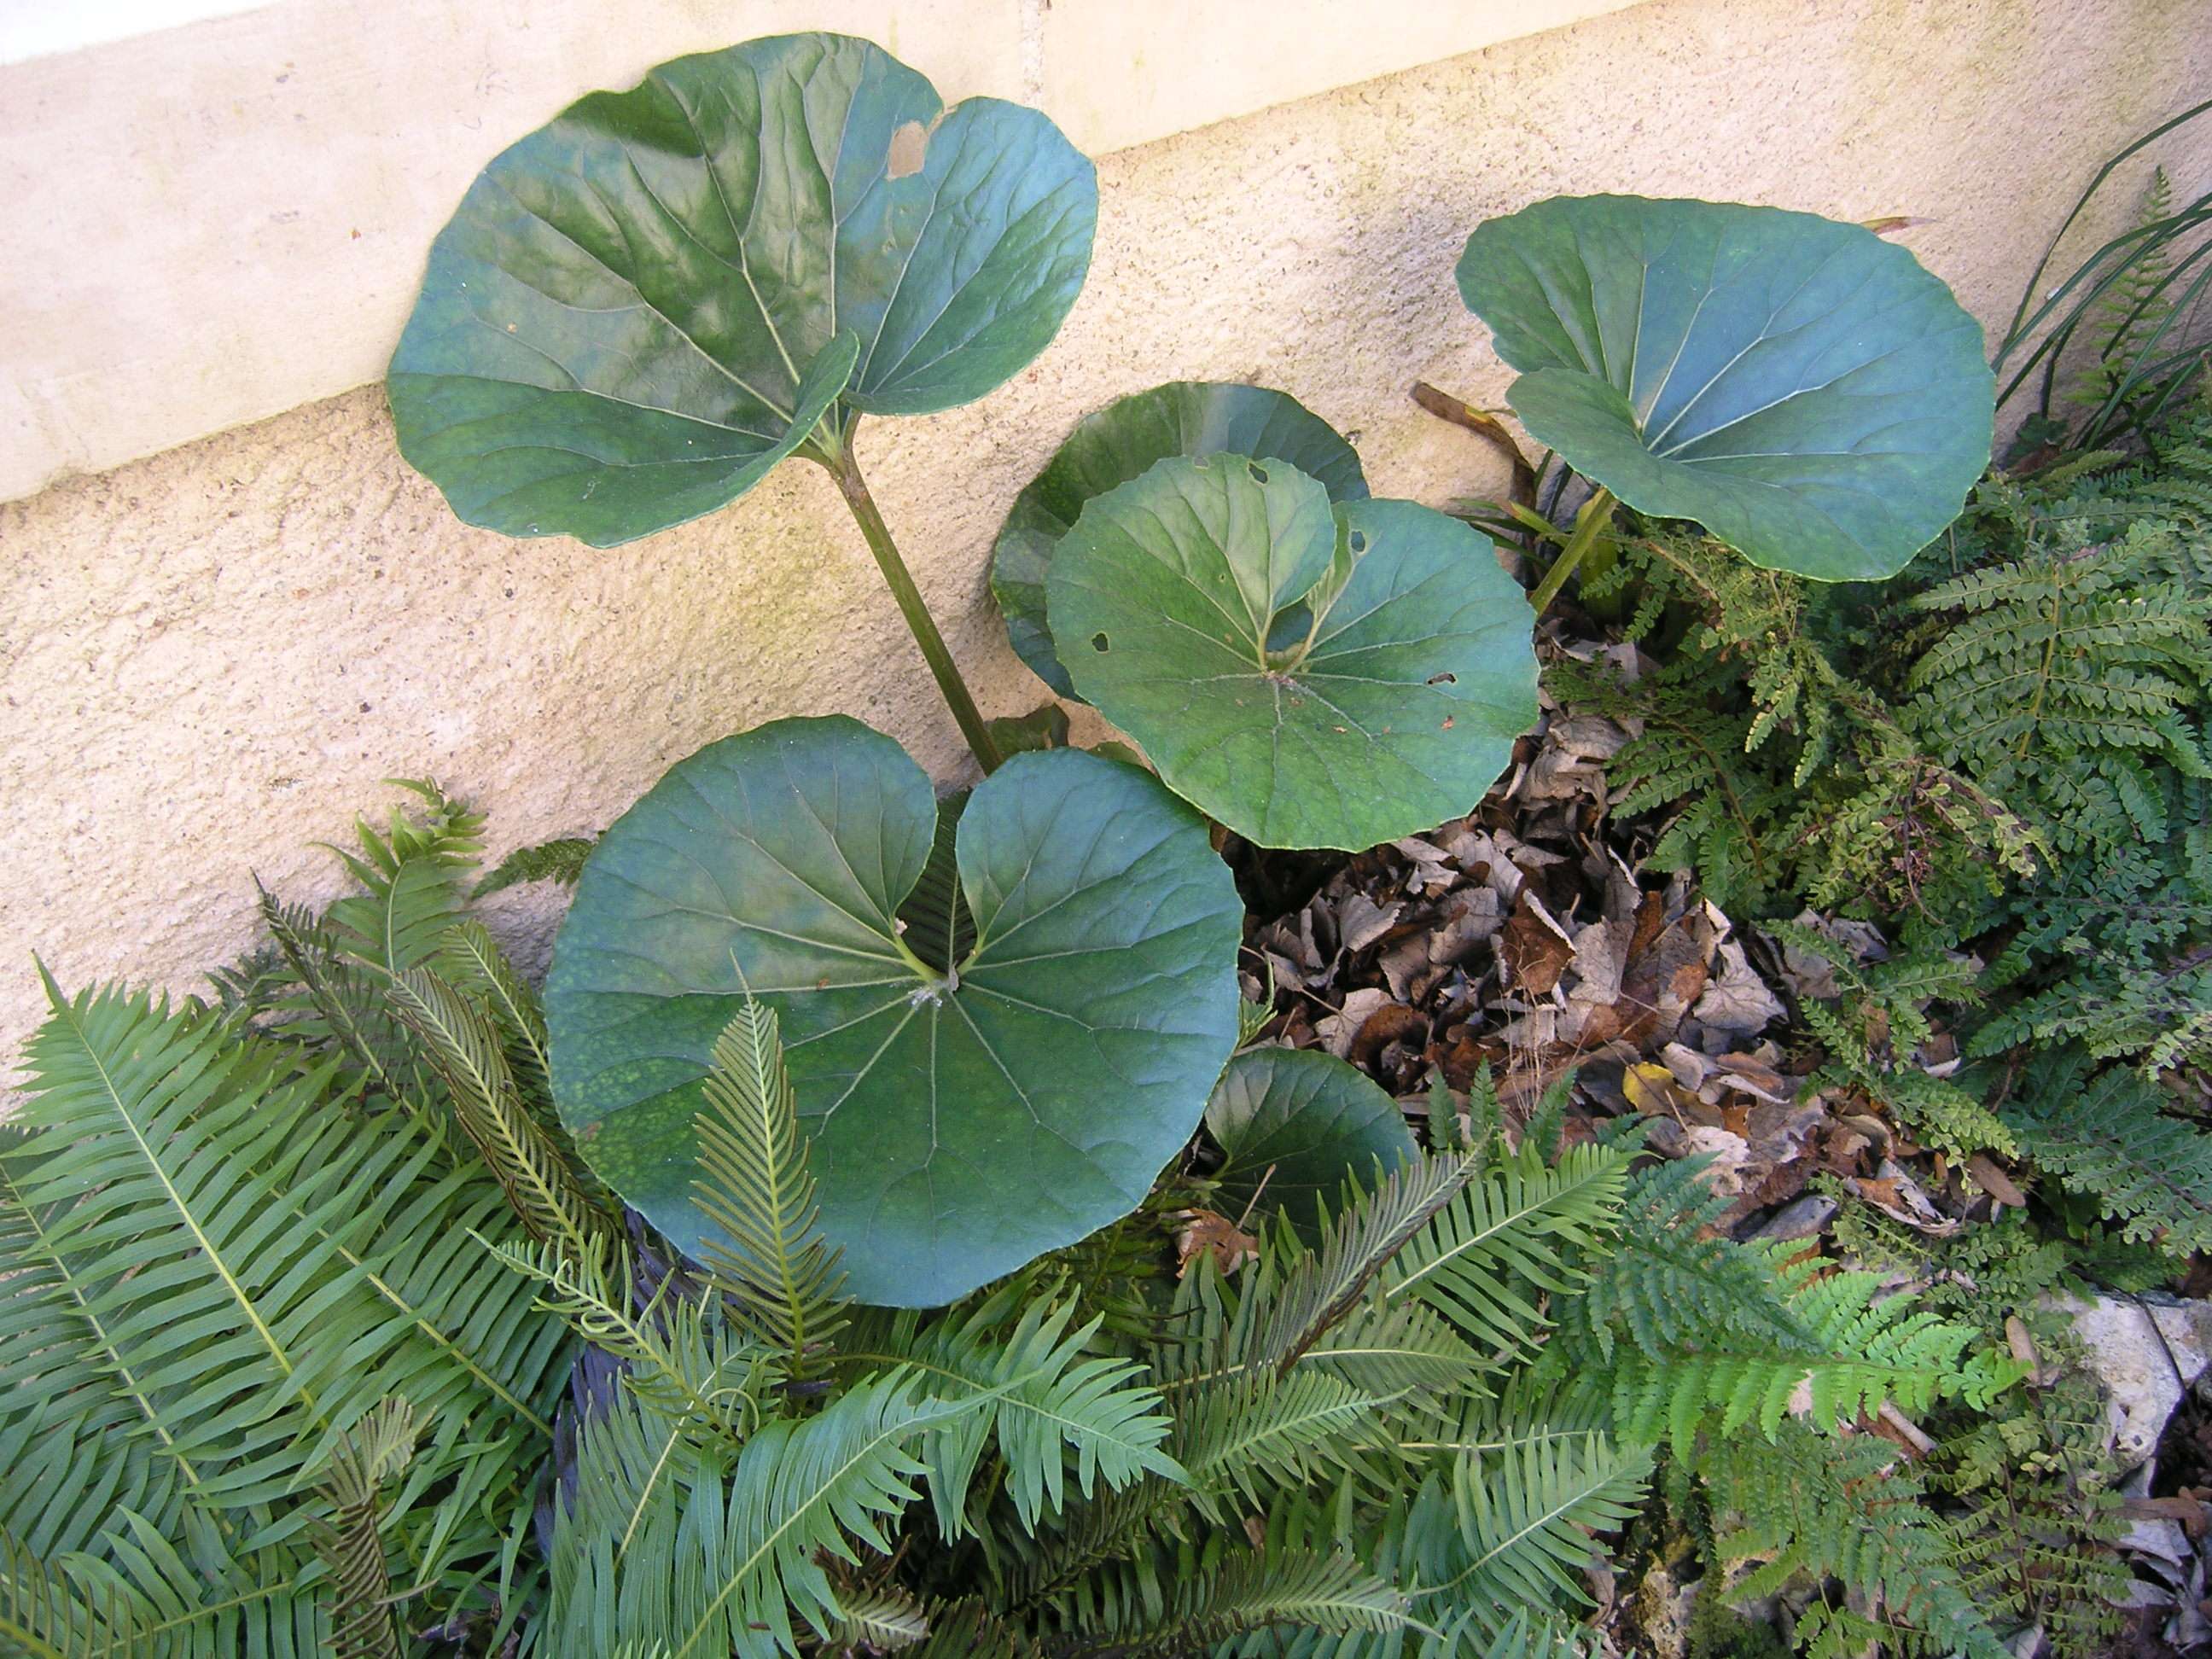 Farfugium japonicum var. giganteum